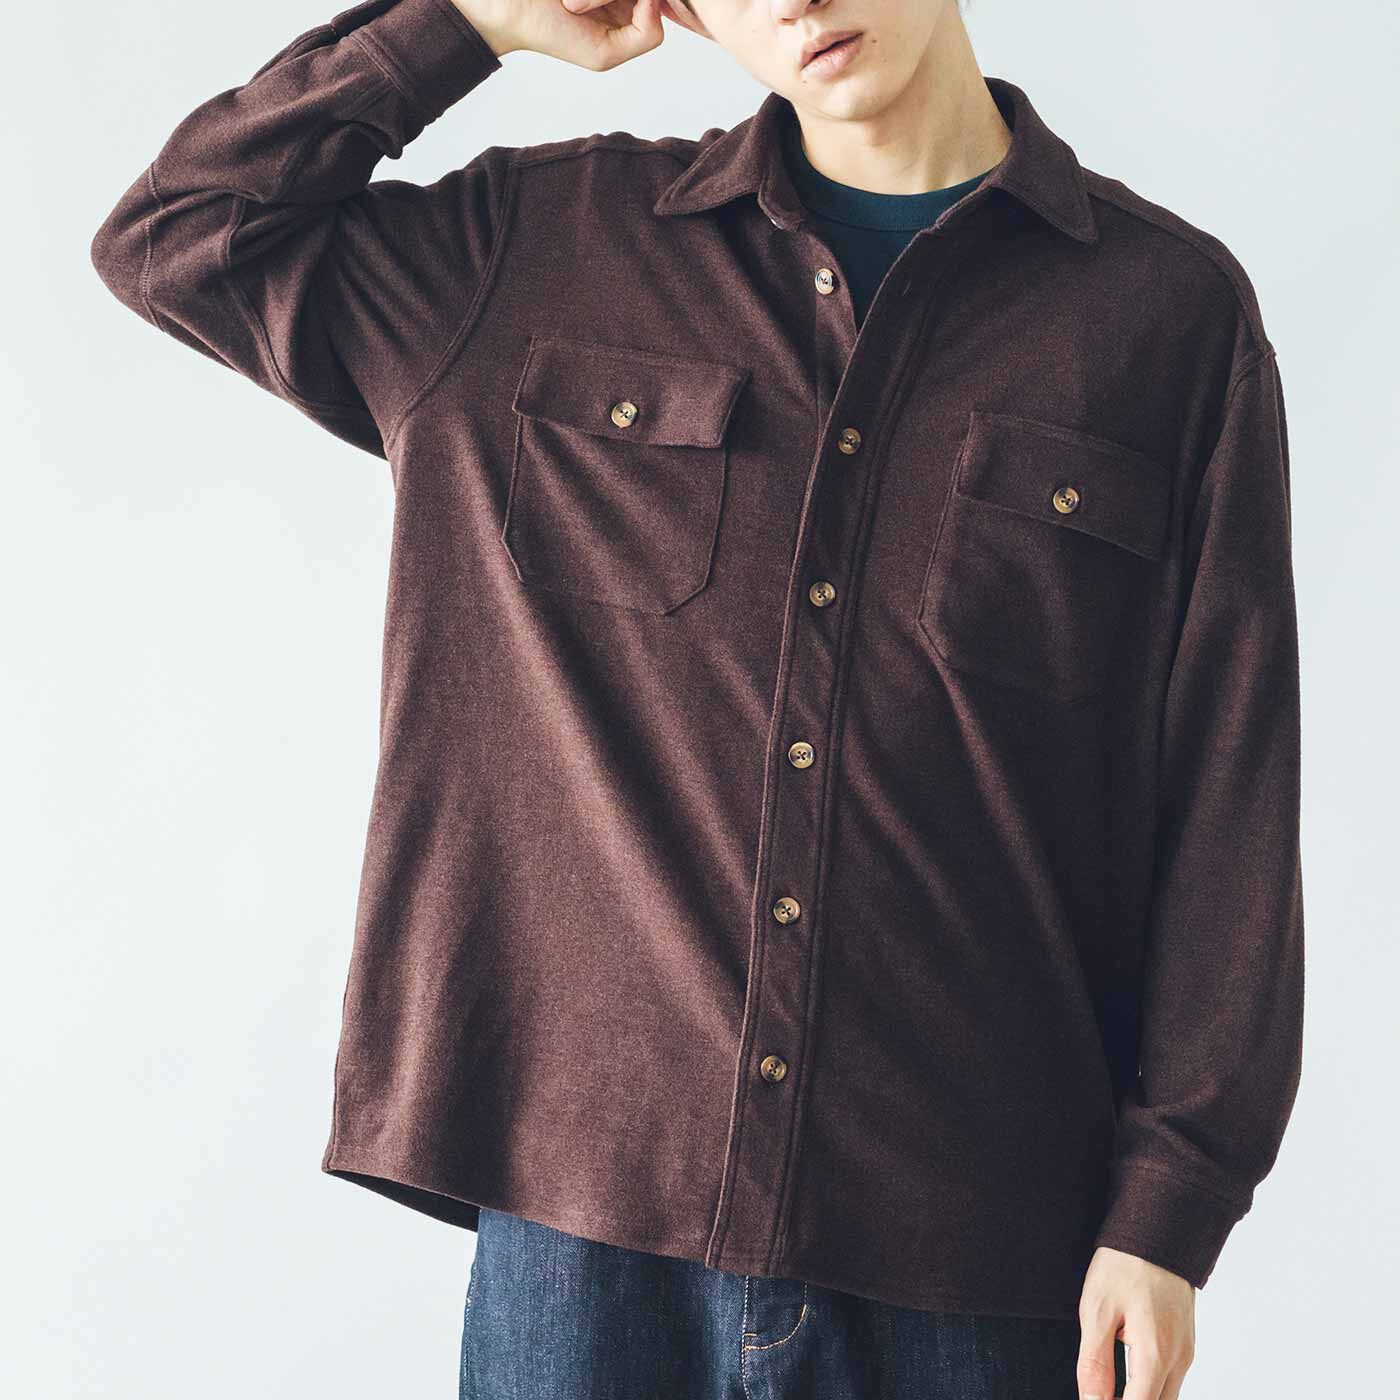 USEDo|ウールシャツのような風合いの のびのびあったか起毛CPOシャツジャケット〈レトロブラウン〉|身長184cm、3サイズ着用